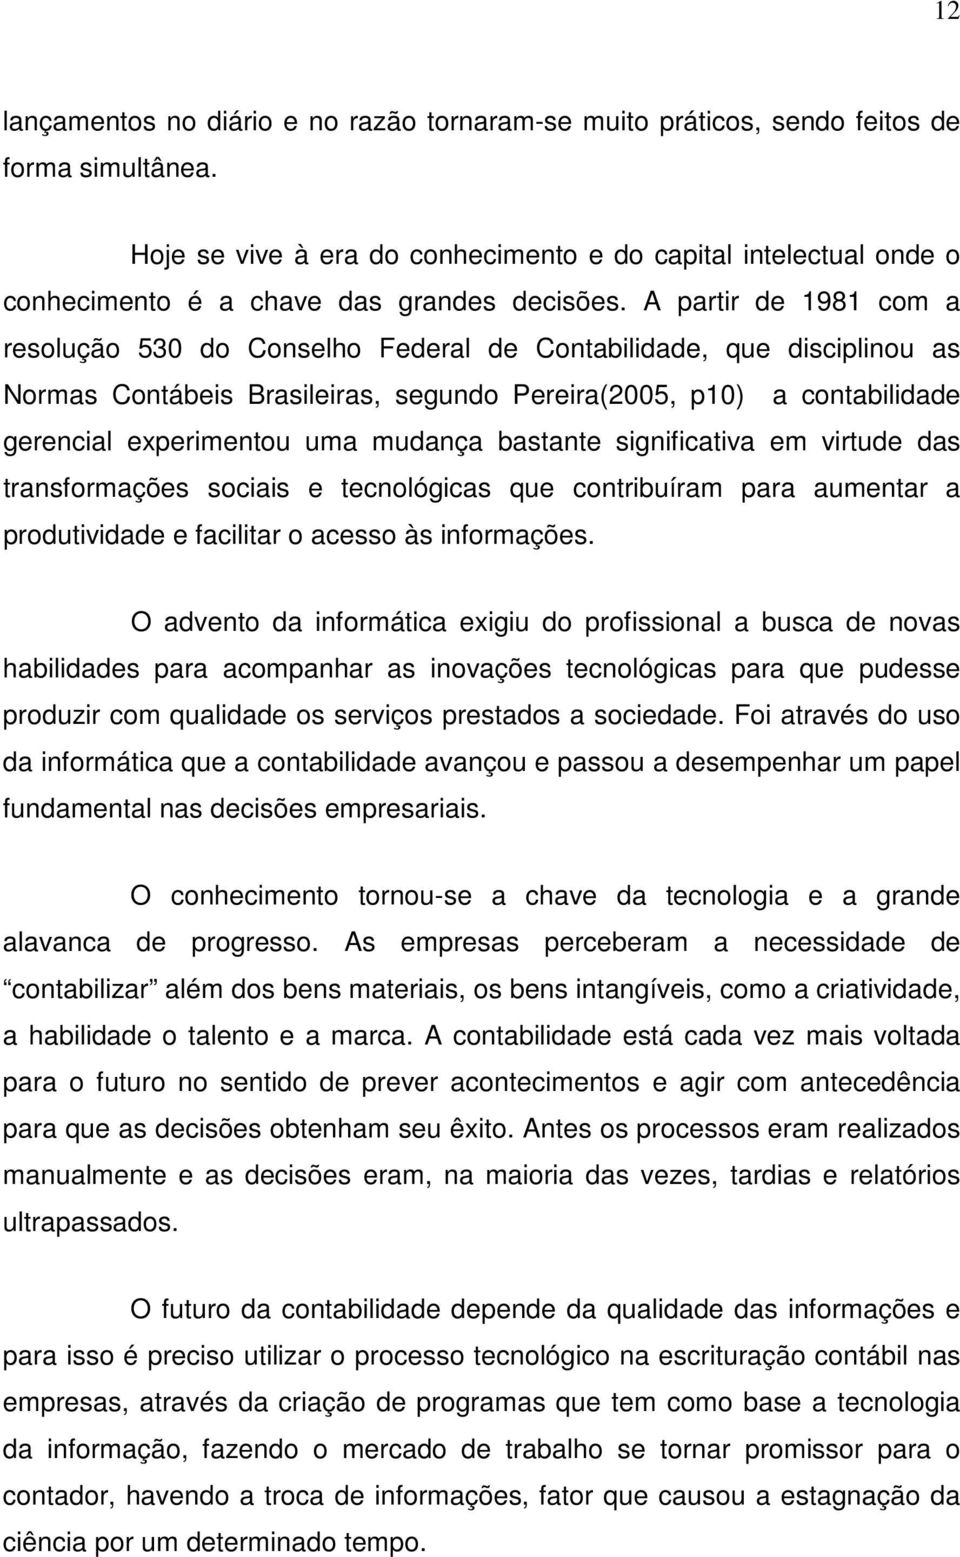 A partir de 1981 com a resolução 530 do Conselho Federal de Contabilidade, que disciplinou as Normas Contábeis Brasileiras, segundo Pereira(2005, p10) a contabilidade gerencial experimentou uma